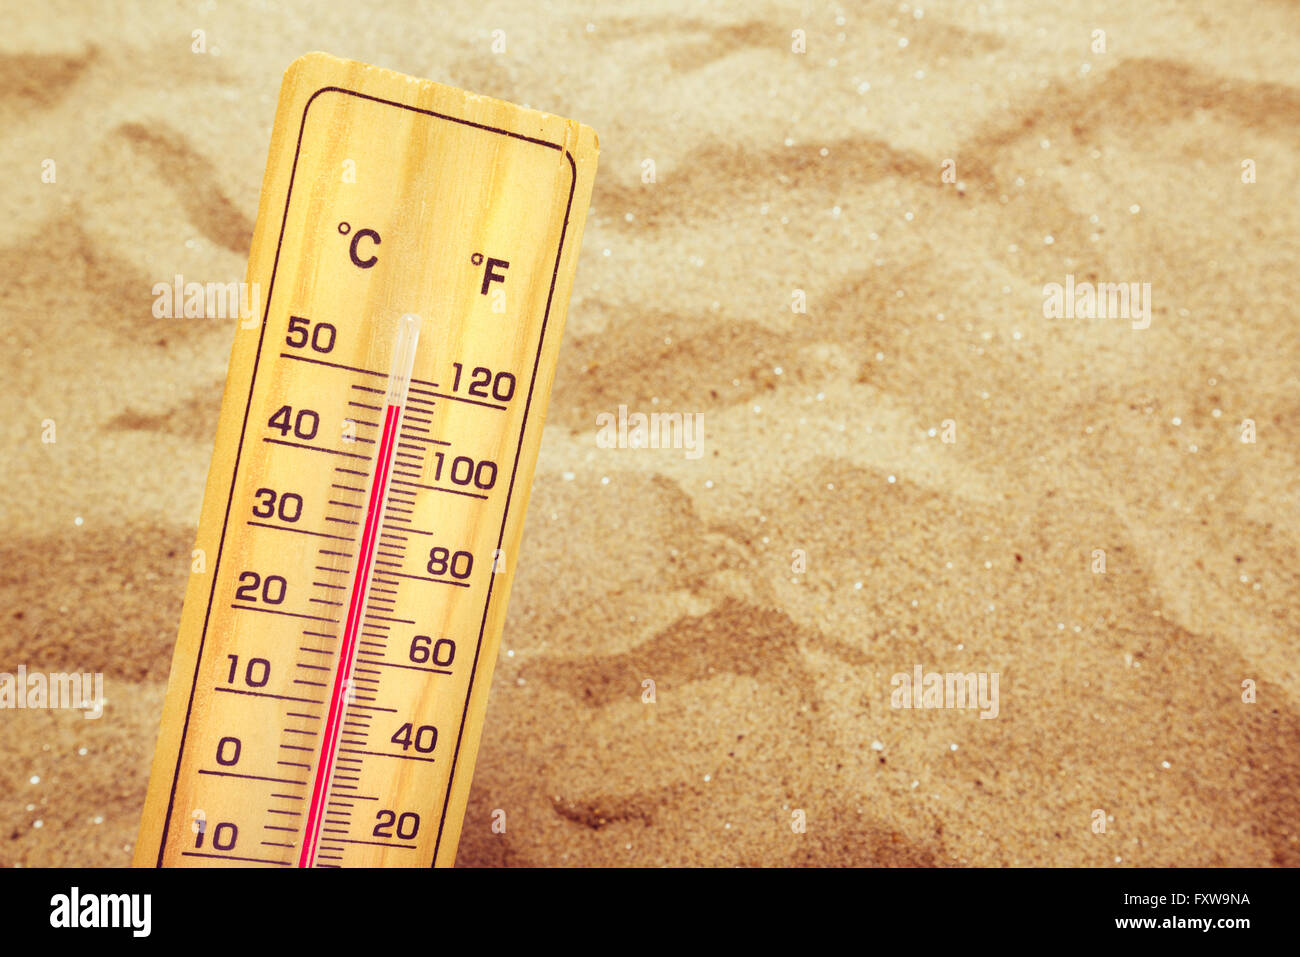 Temperaturas extremadamente altas, con termómetro Celsius y Fahrenheit escala sobre la cálida arena del desierto. Foto de stock